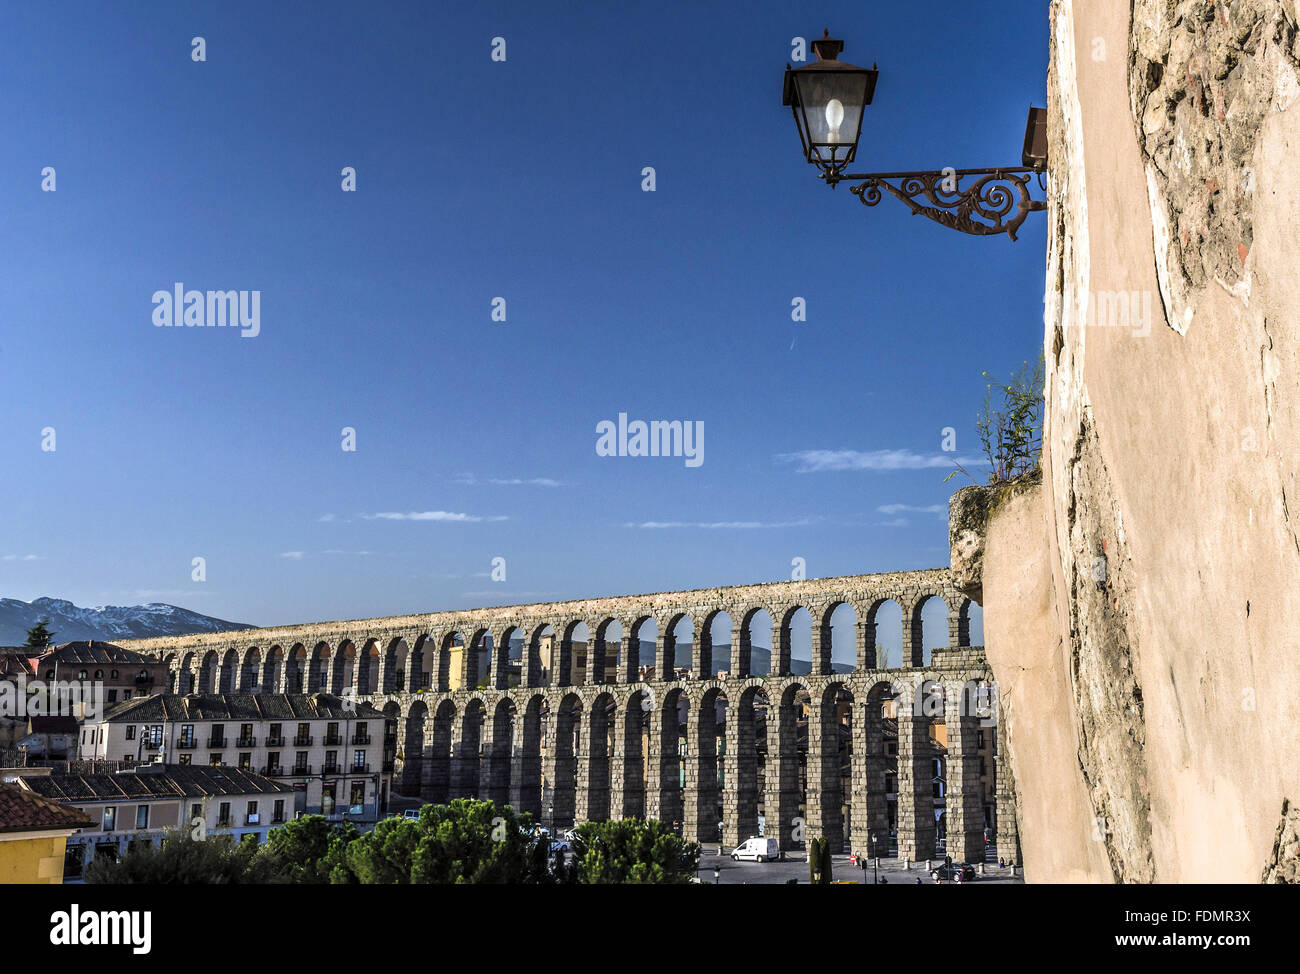 Acueducto de Segovia - Segovia provincia - comunidad autónoma de Castilla y León Foto de stock